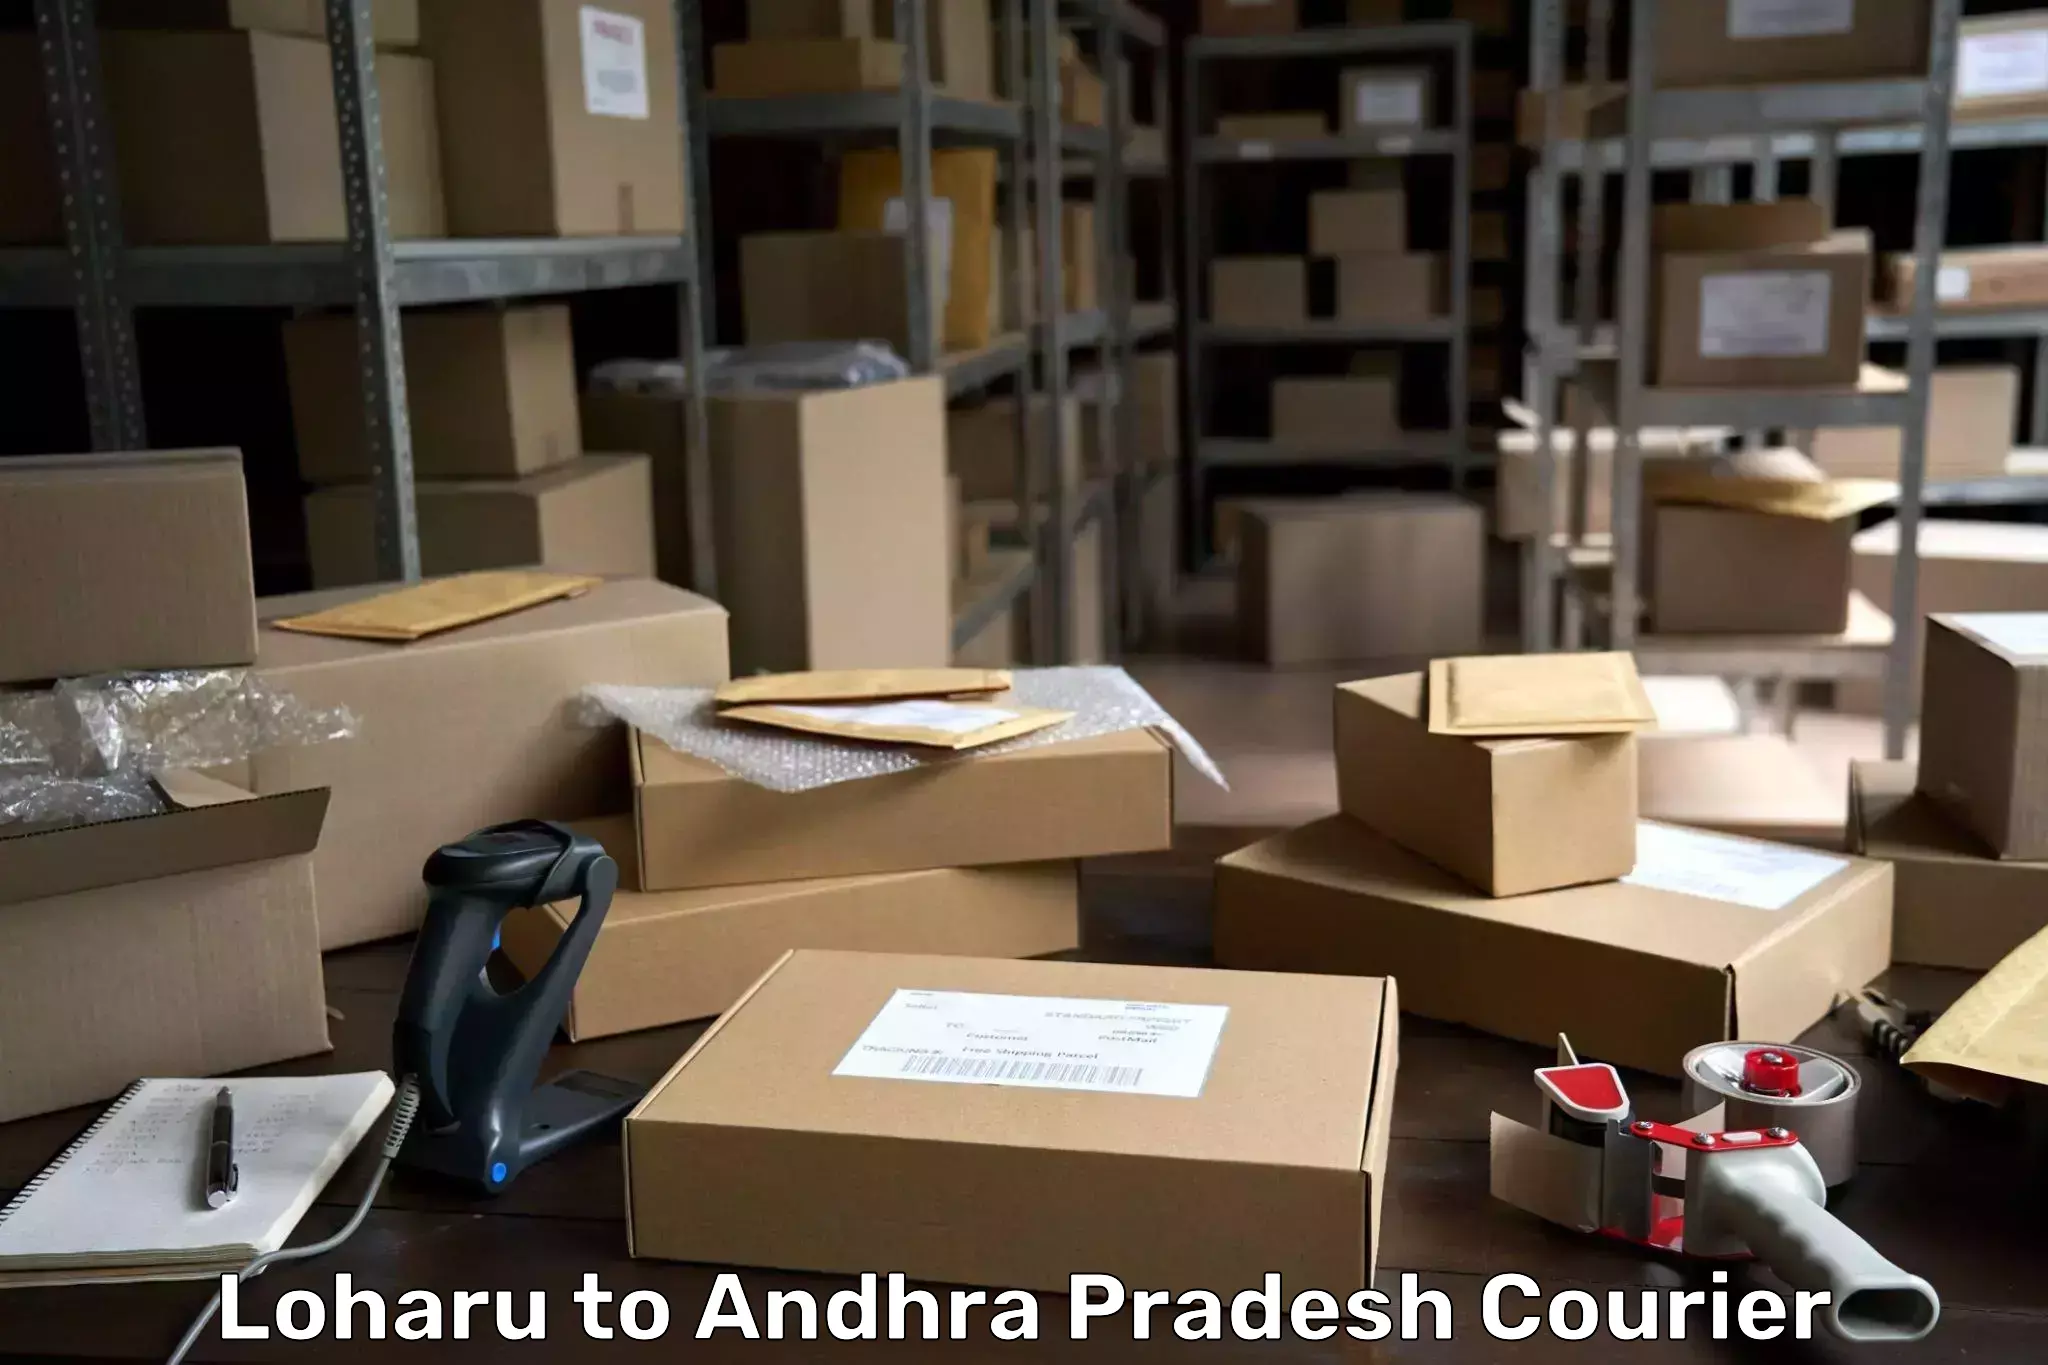 Courier service efficiency Loharu to Andhra Pradesh